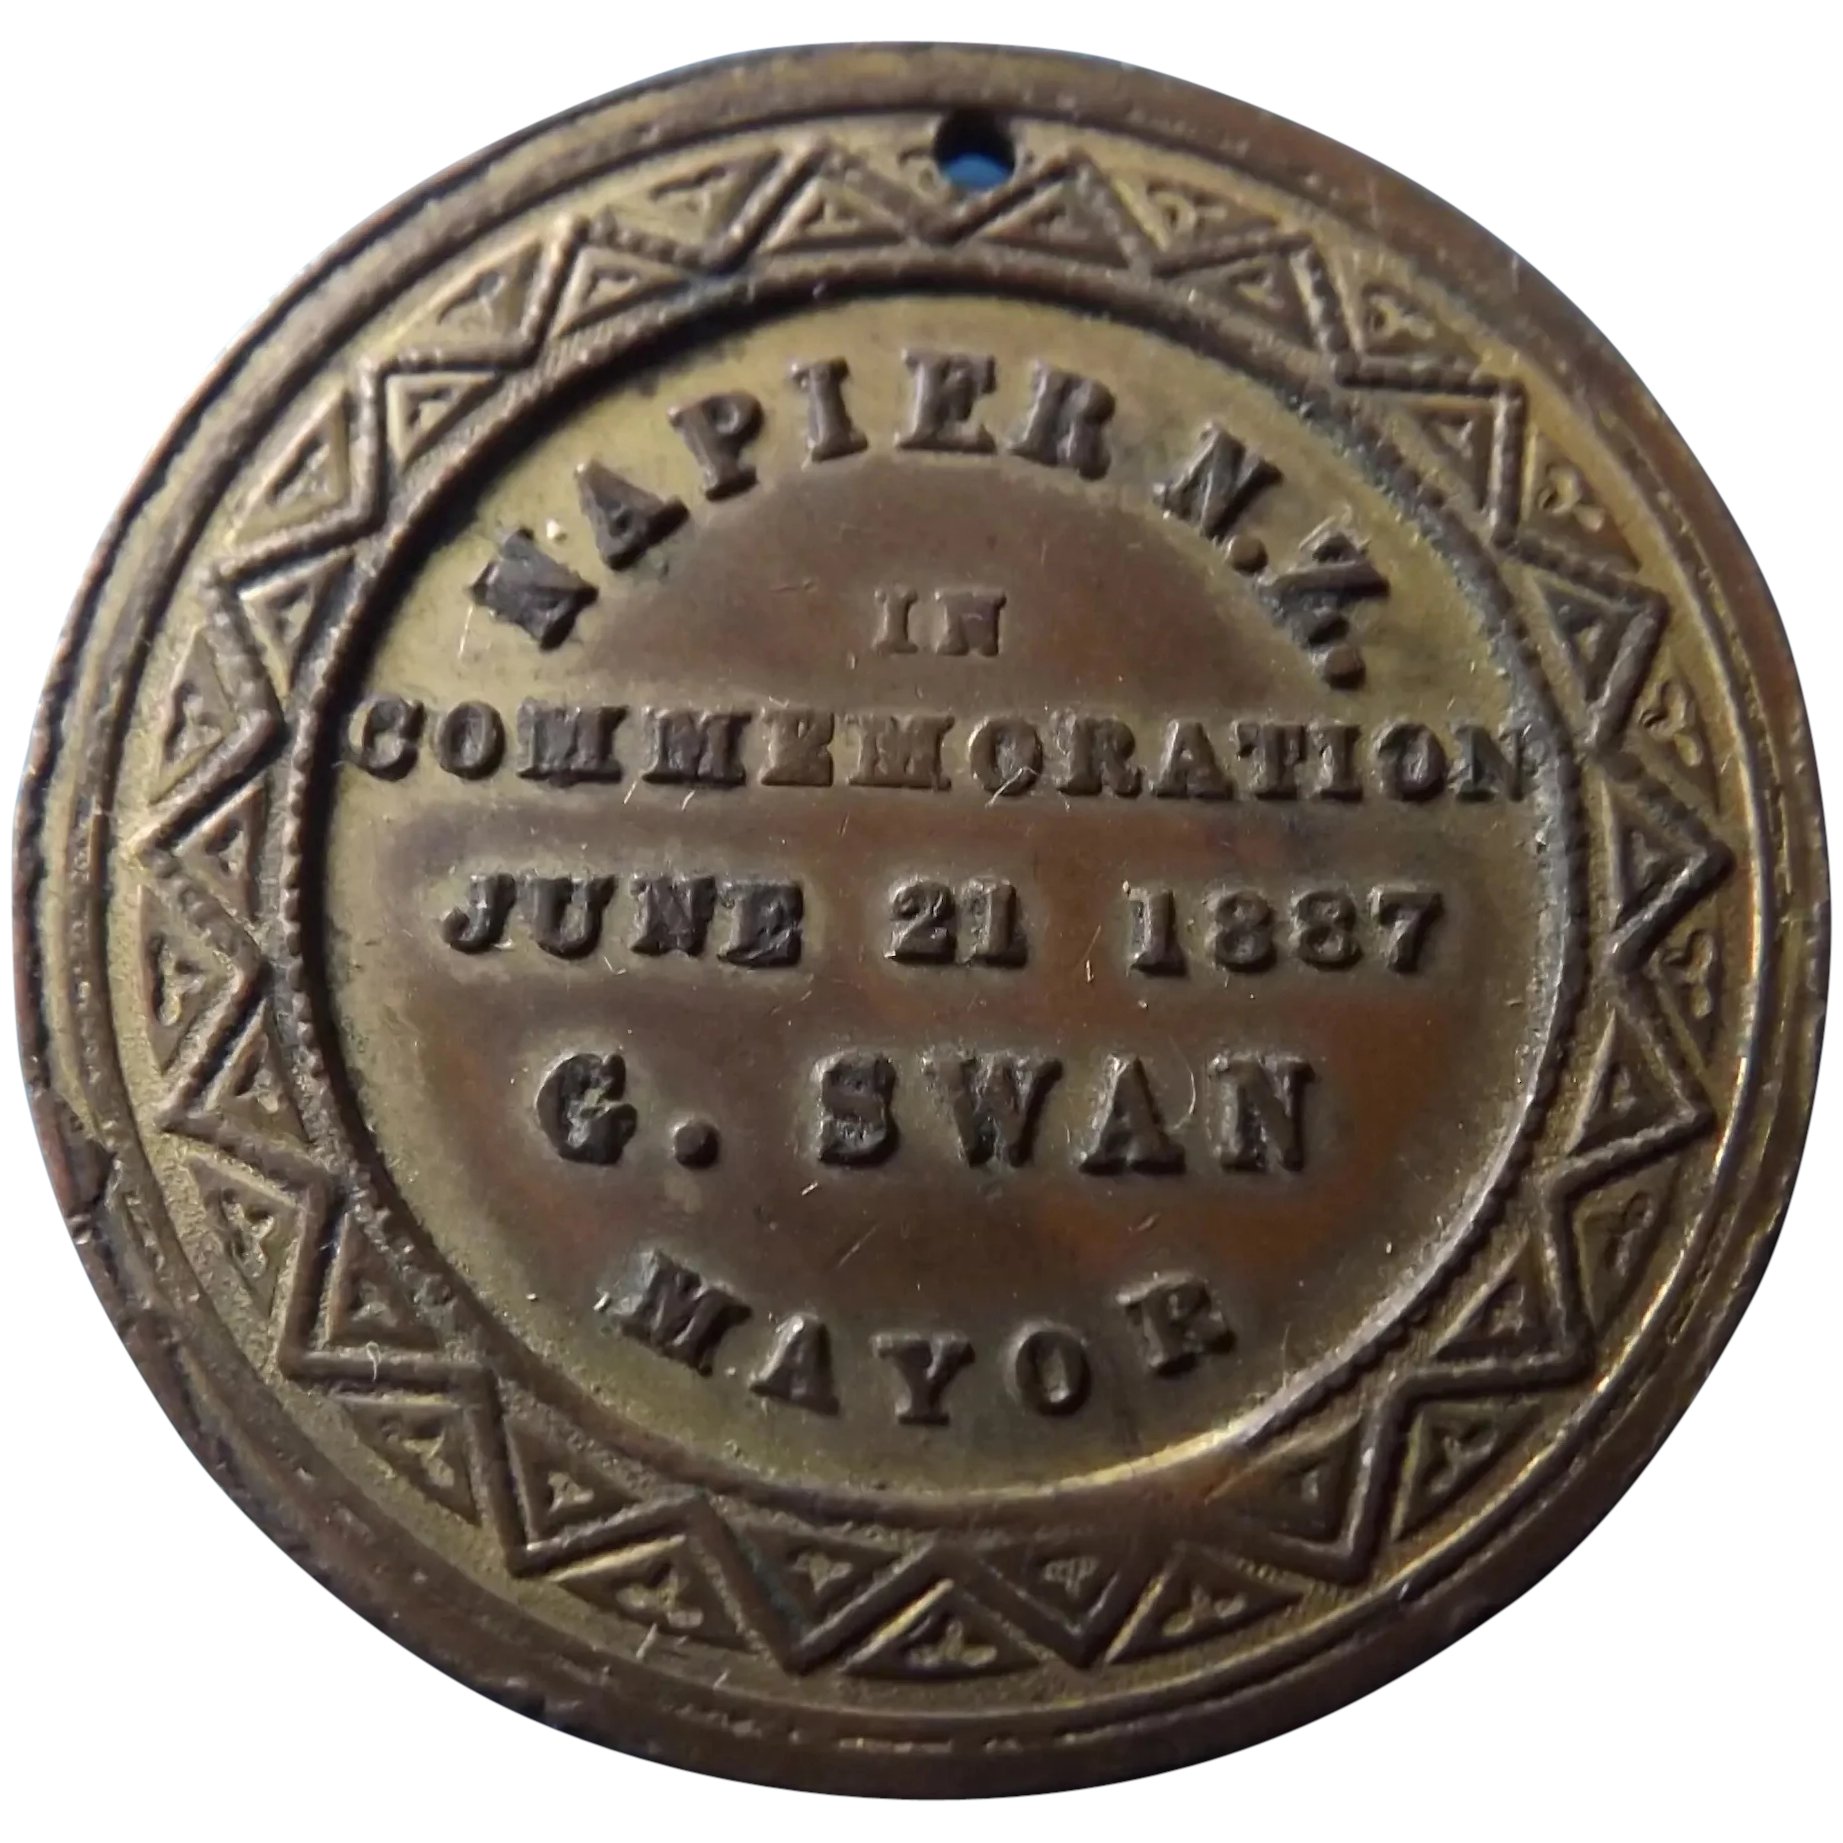 Queen Victoria 1887 Jubilee New Zealand Commemorative Medal